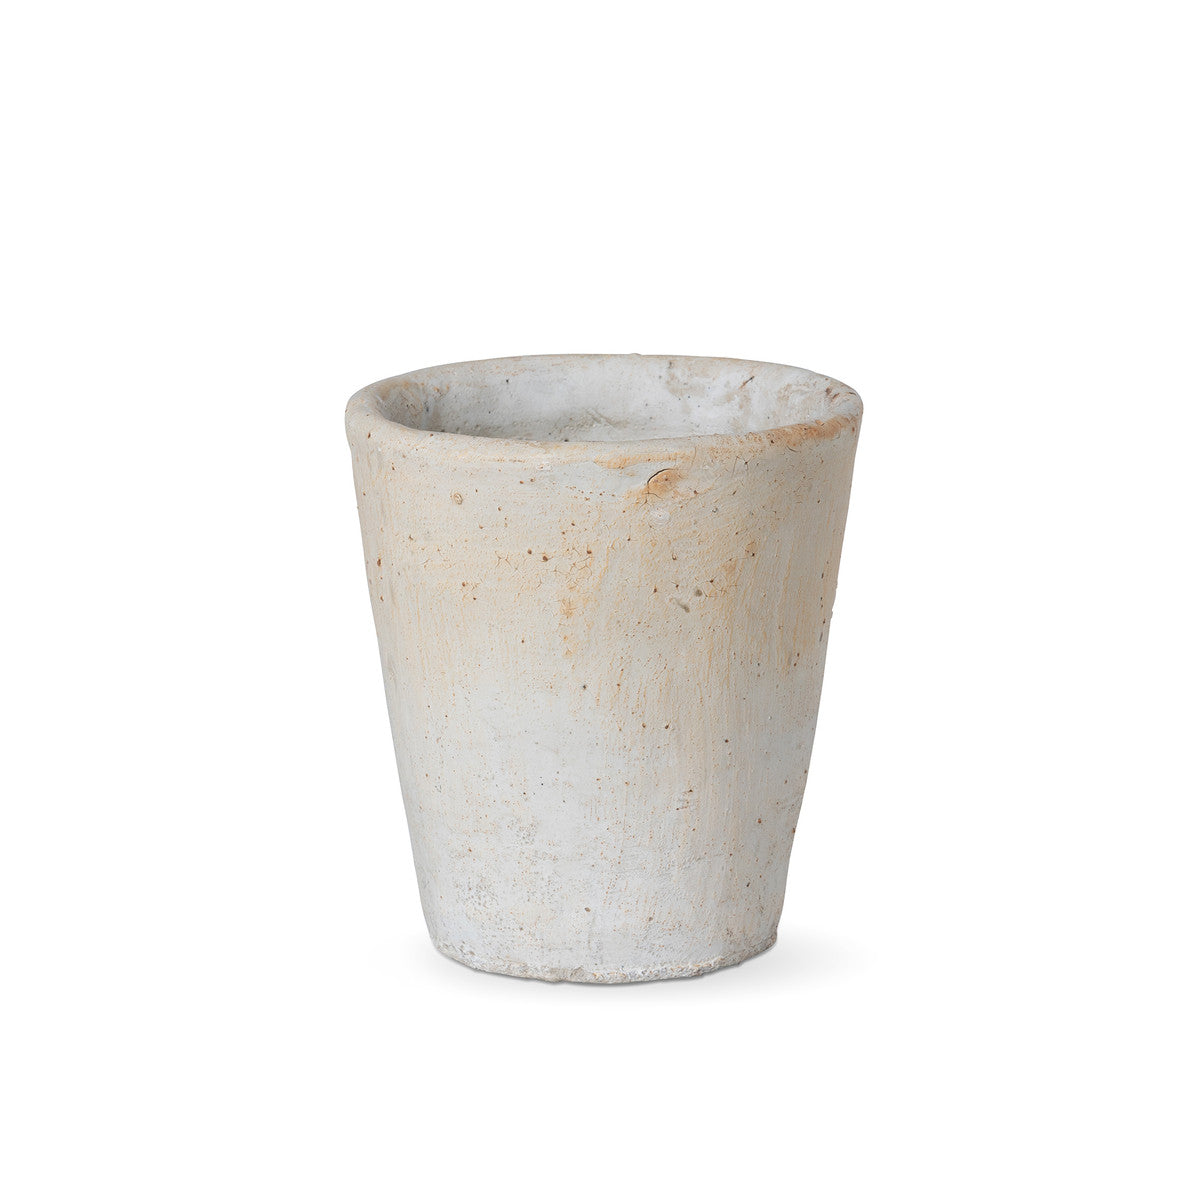 Distressed Concrete Pot - Small